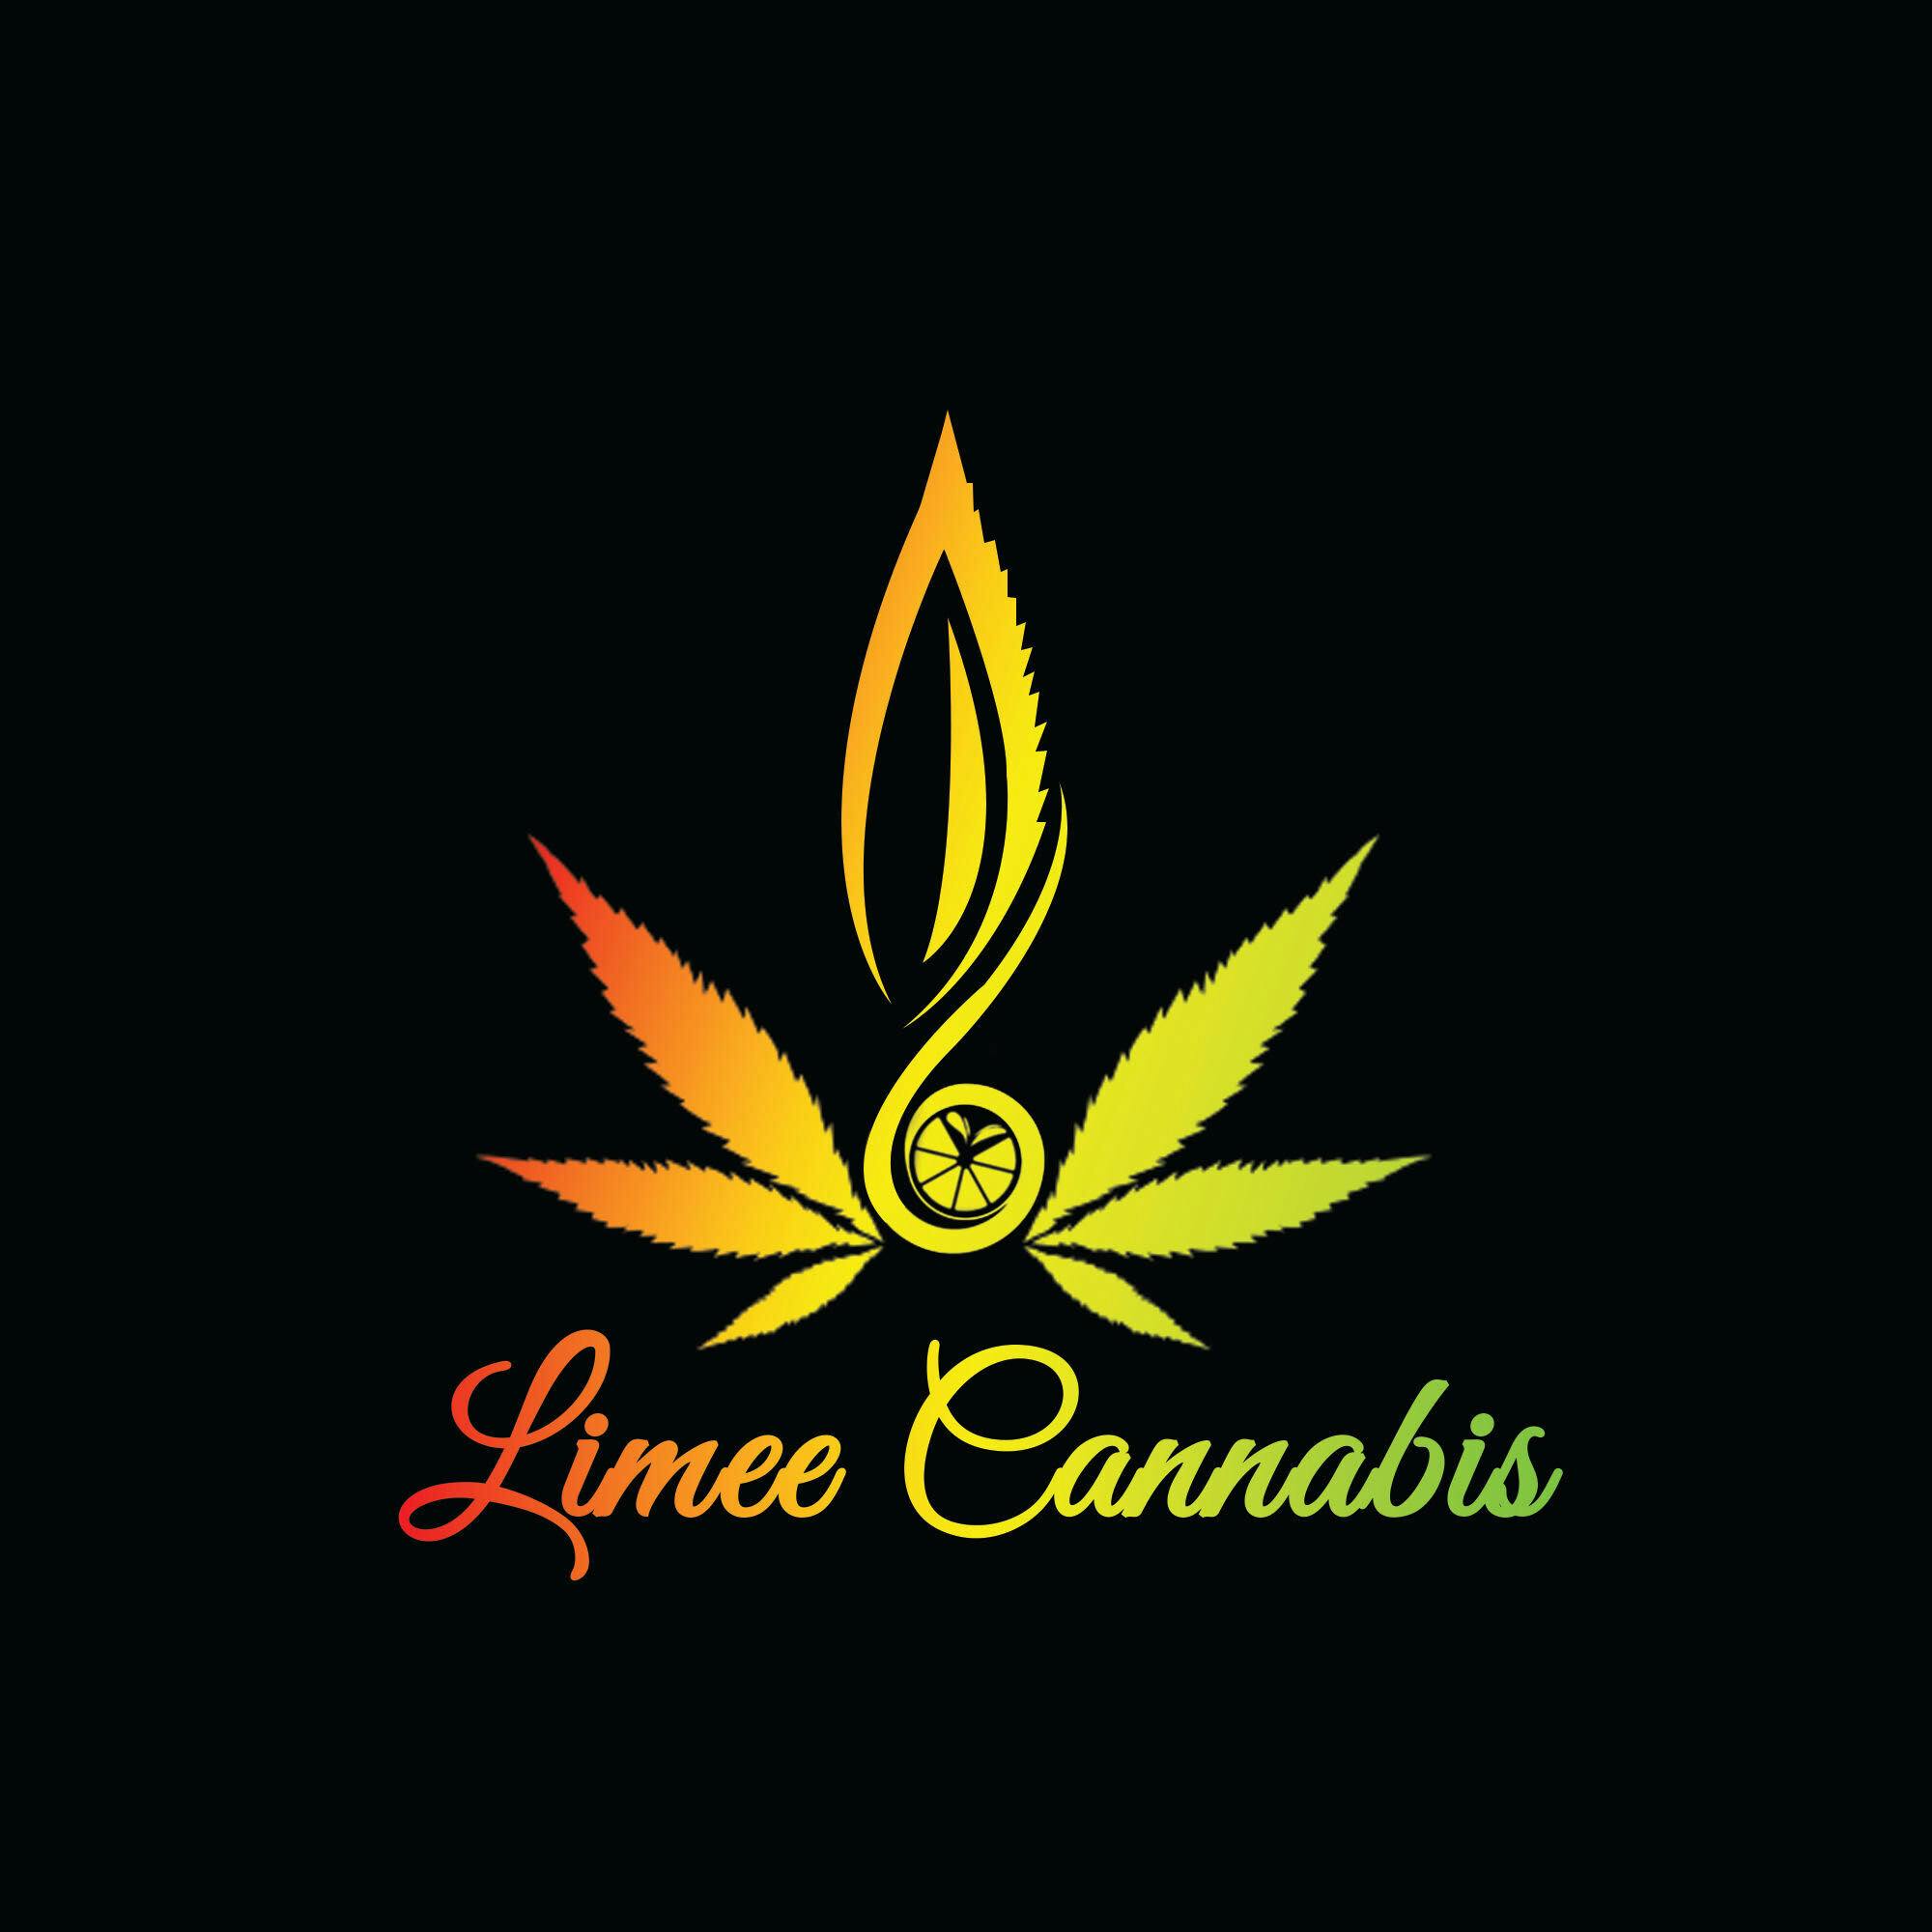 Limee Cannabis